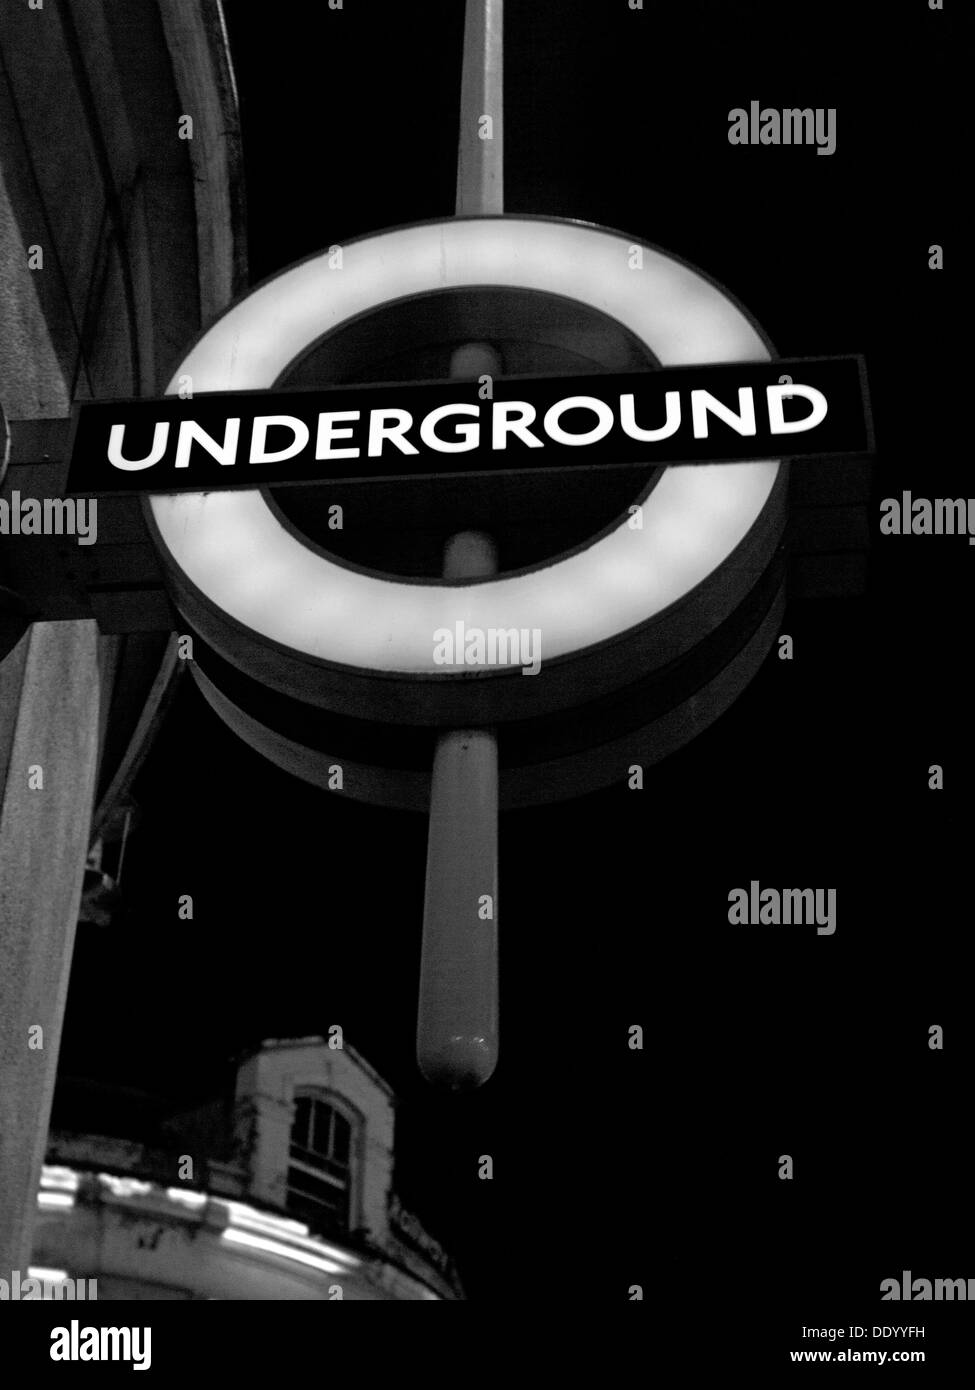 Logo du métro de Londres à la station de métro Liverpool Street, City of London, Londres, Angleterre, RU Banque D'Images